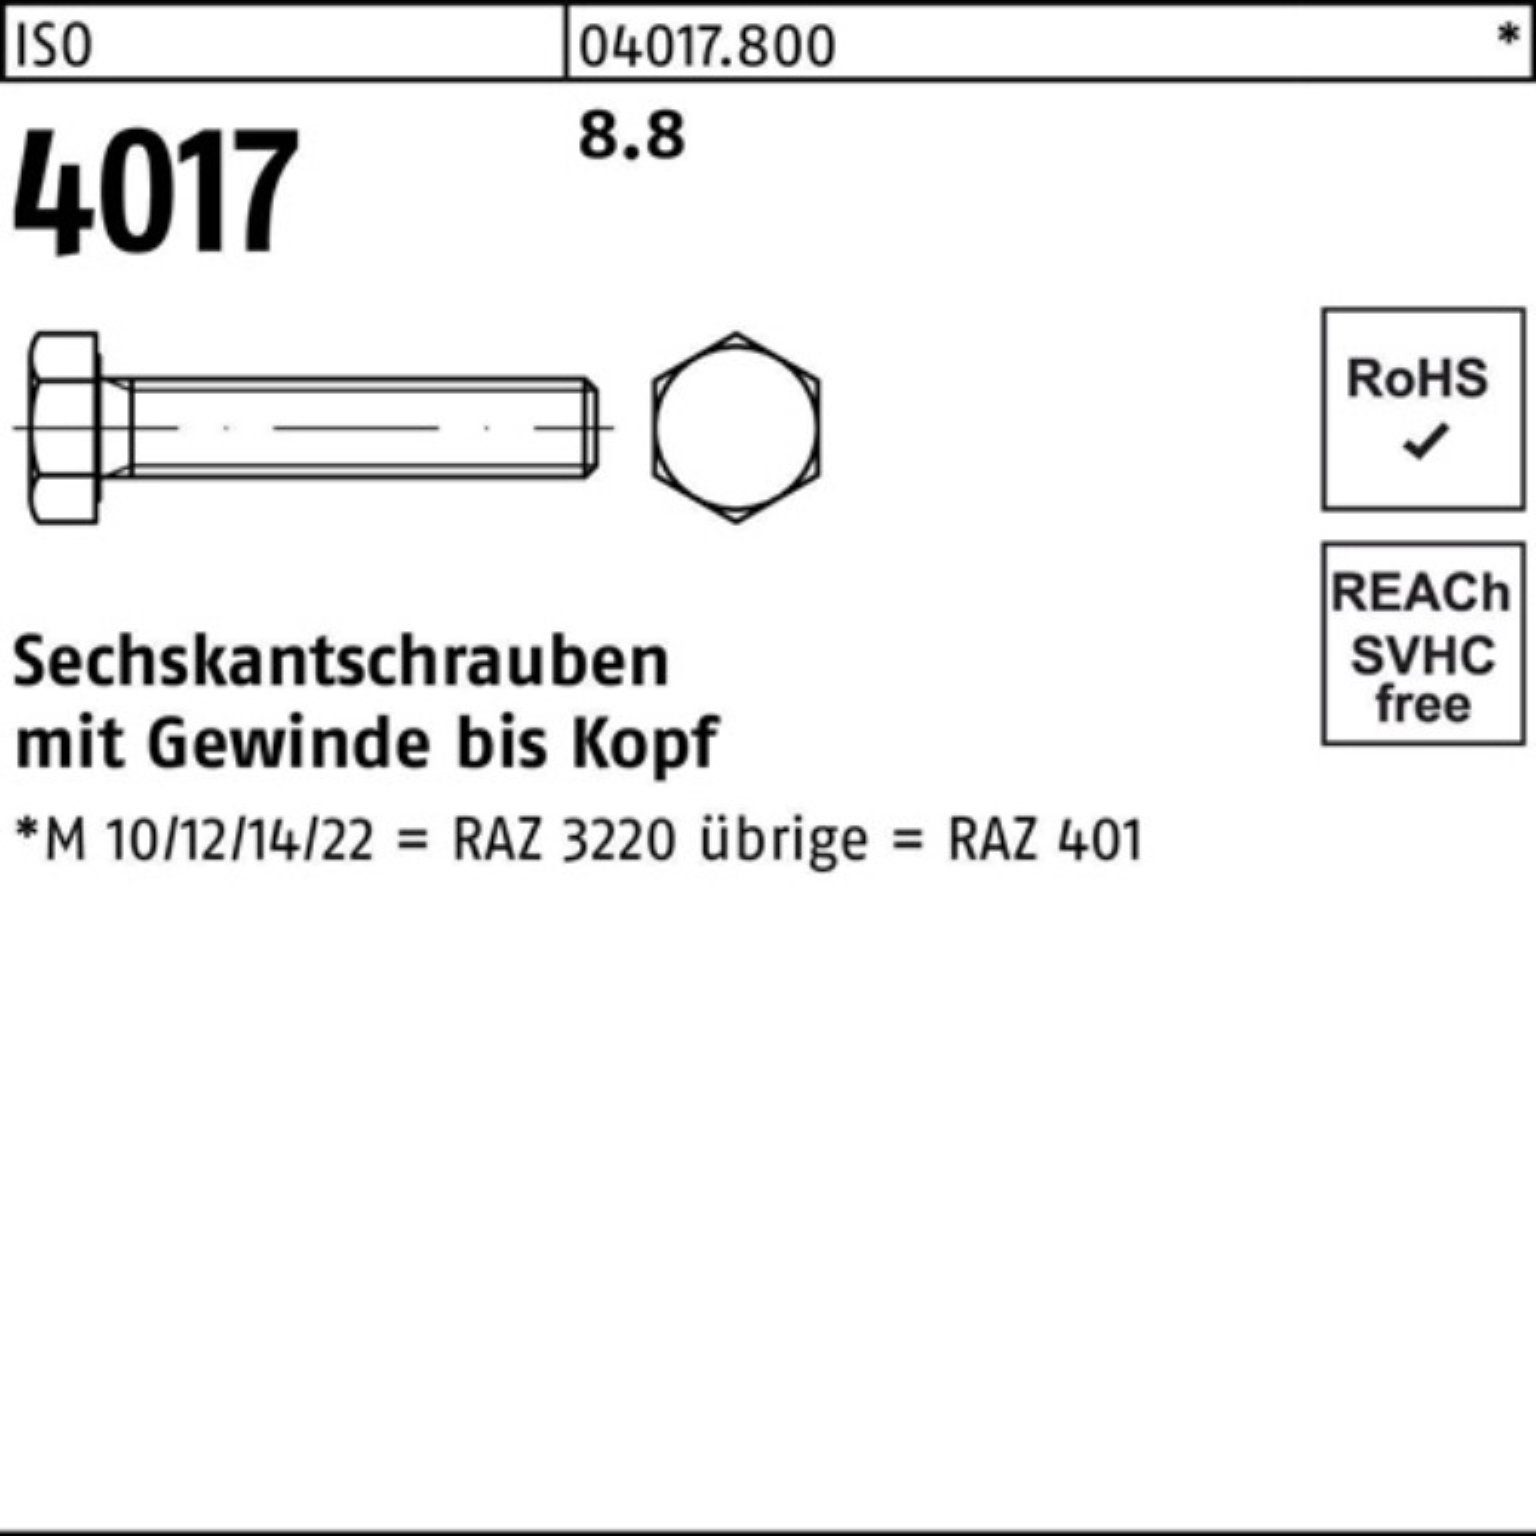 Bufab Sechskantschraube Sechskantschraube 8.8 40 ISO VG 50 M10x Pack 190 4017 ISO Stück 100er